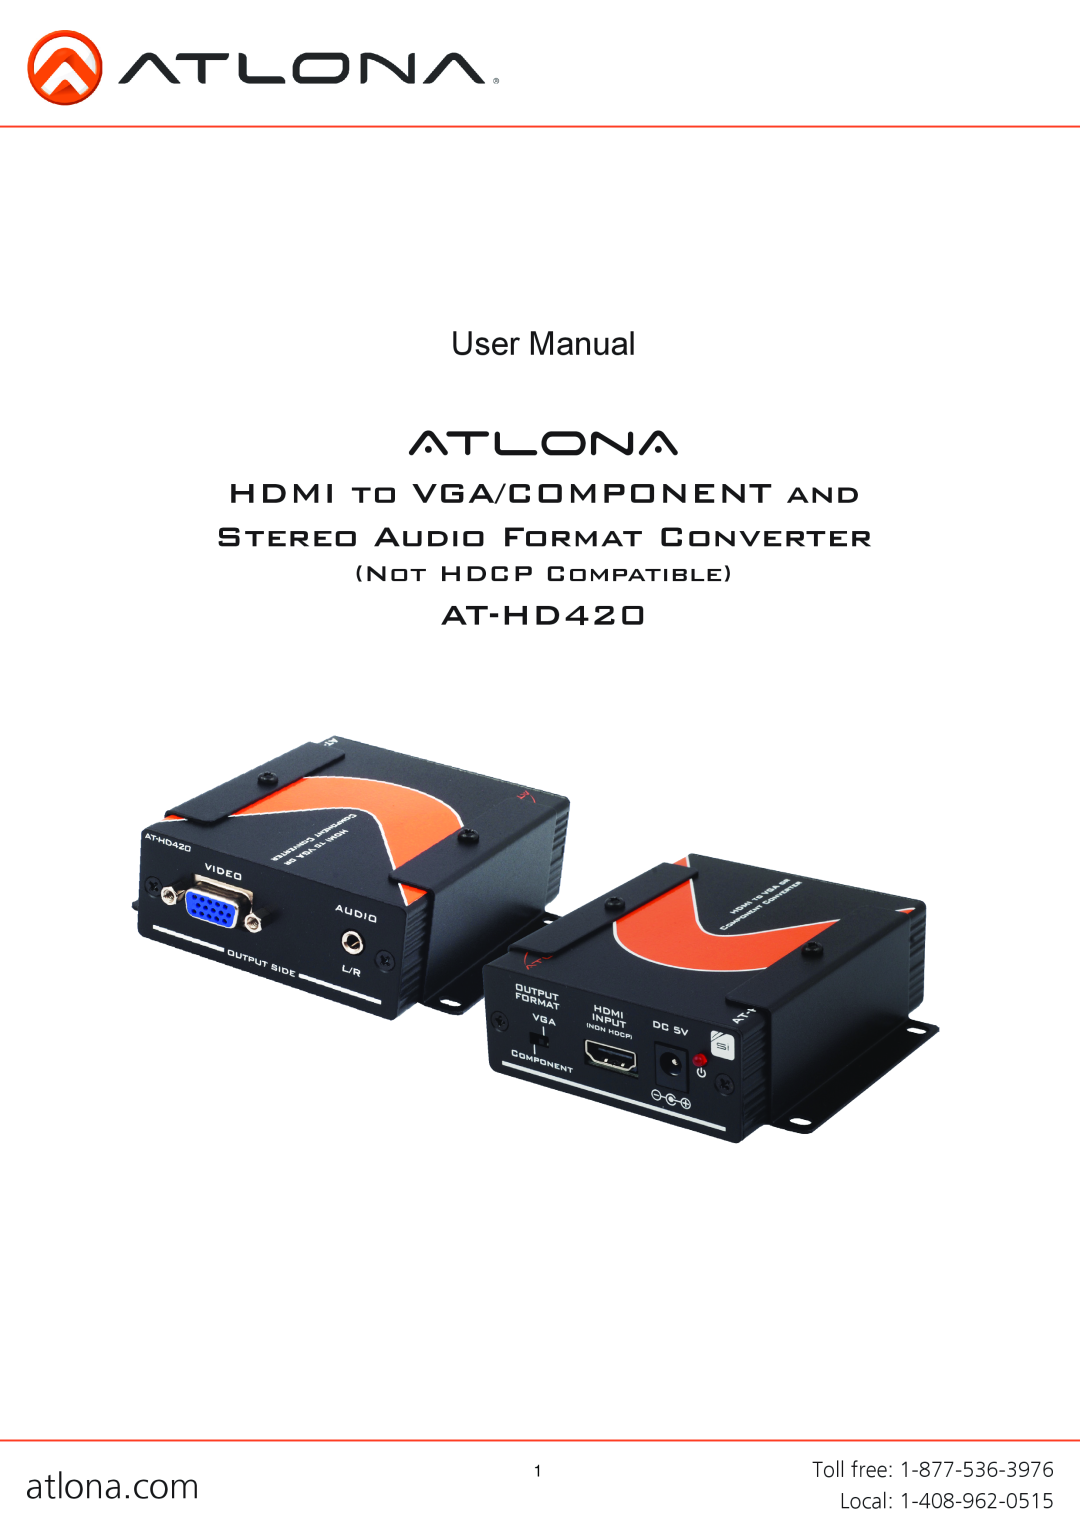 Atlona AT-HD420 user manual HDMI to VGA/COMPONENT and Stereo Audio Format Converter, atlona.com, AtlonA, User Manual 